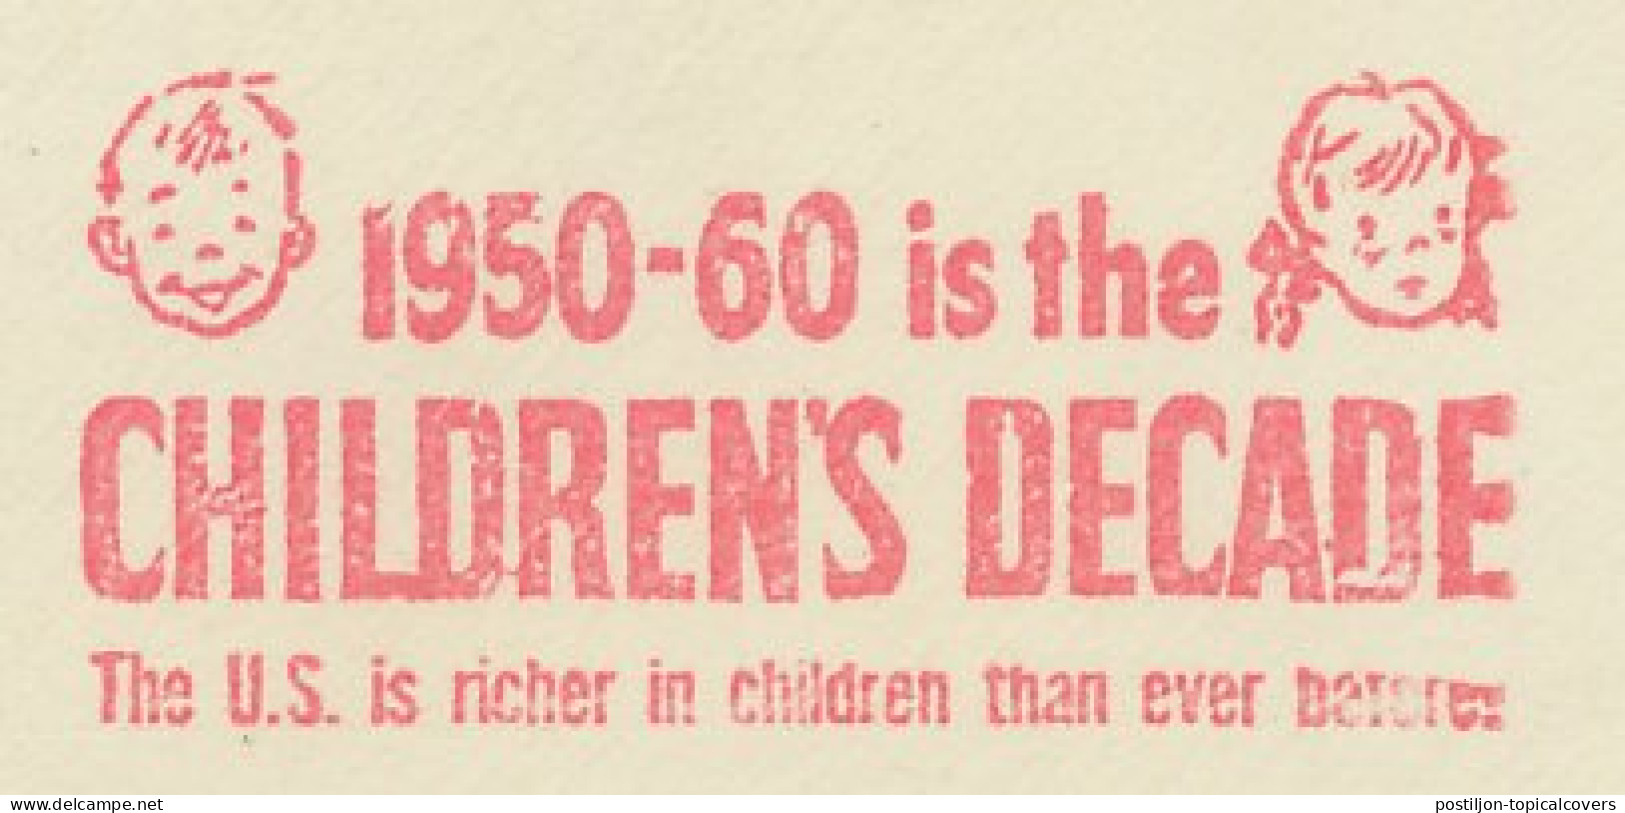 Meter Cut USA 1951 Children S Decade - 1950 - 60 - Altri & Non Classificati